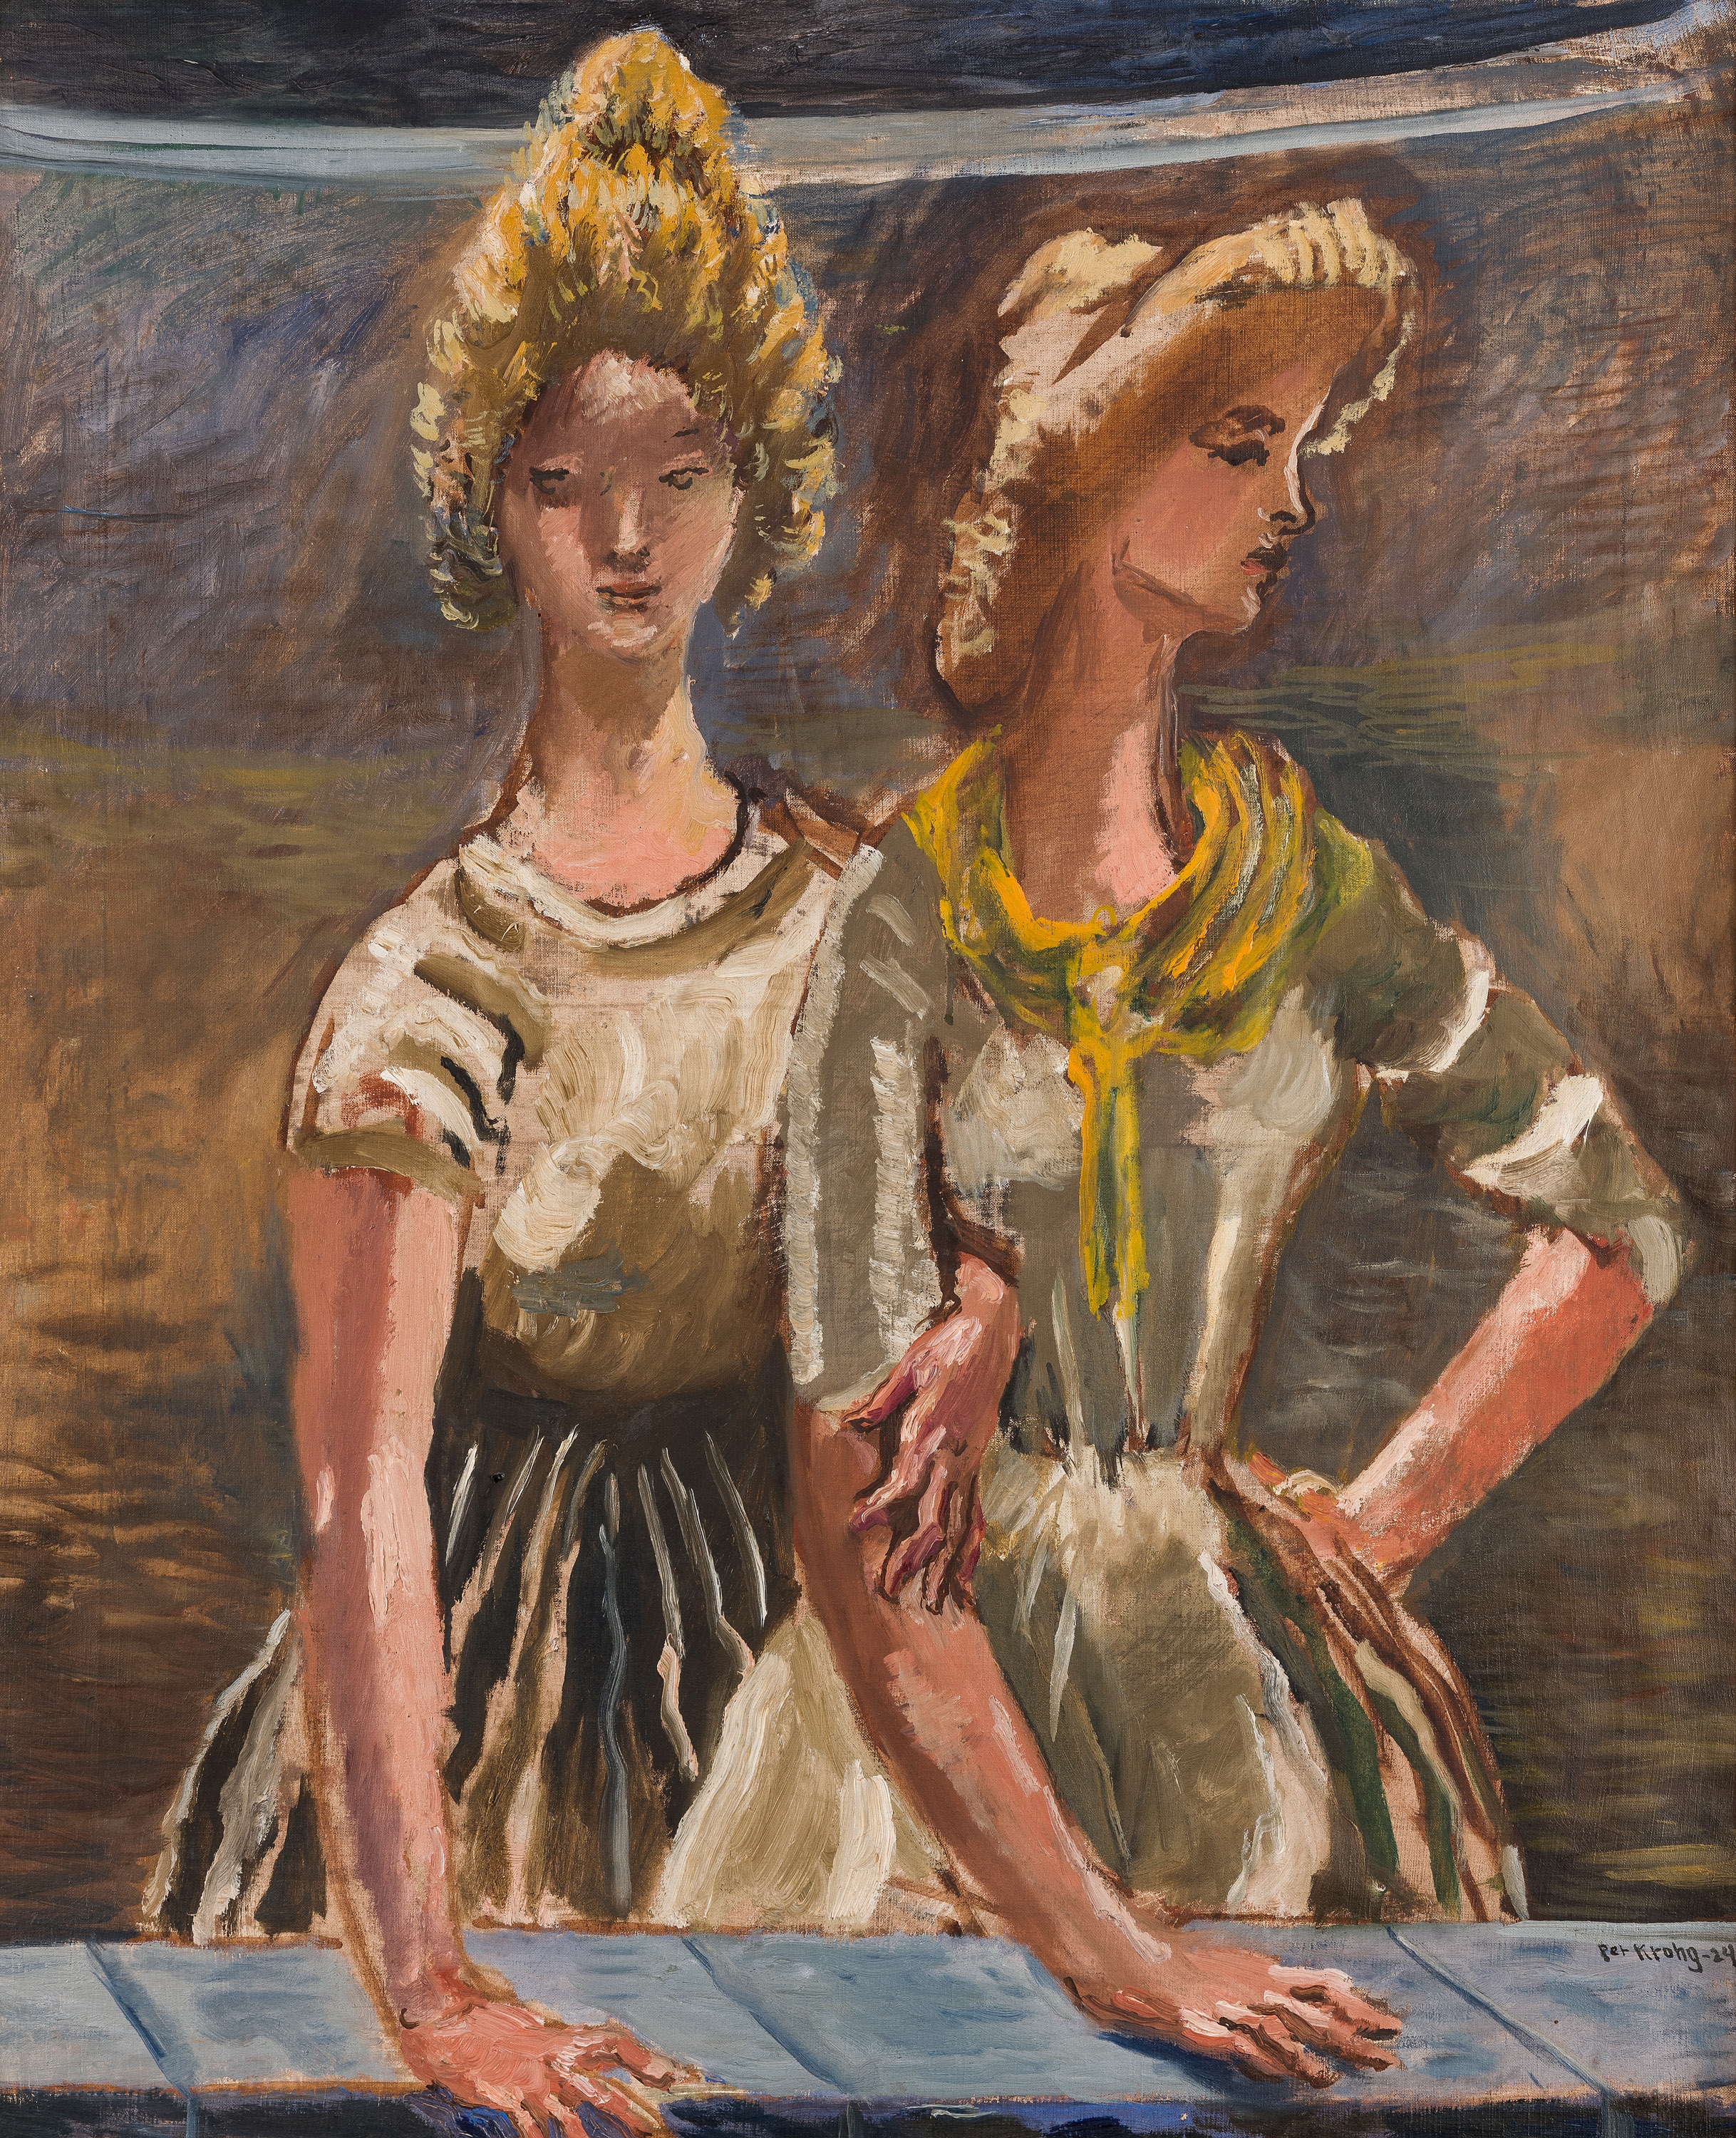 Two Women, Part of Departure II 1924 by Per Krohg